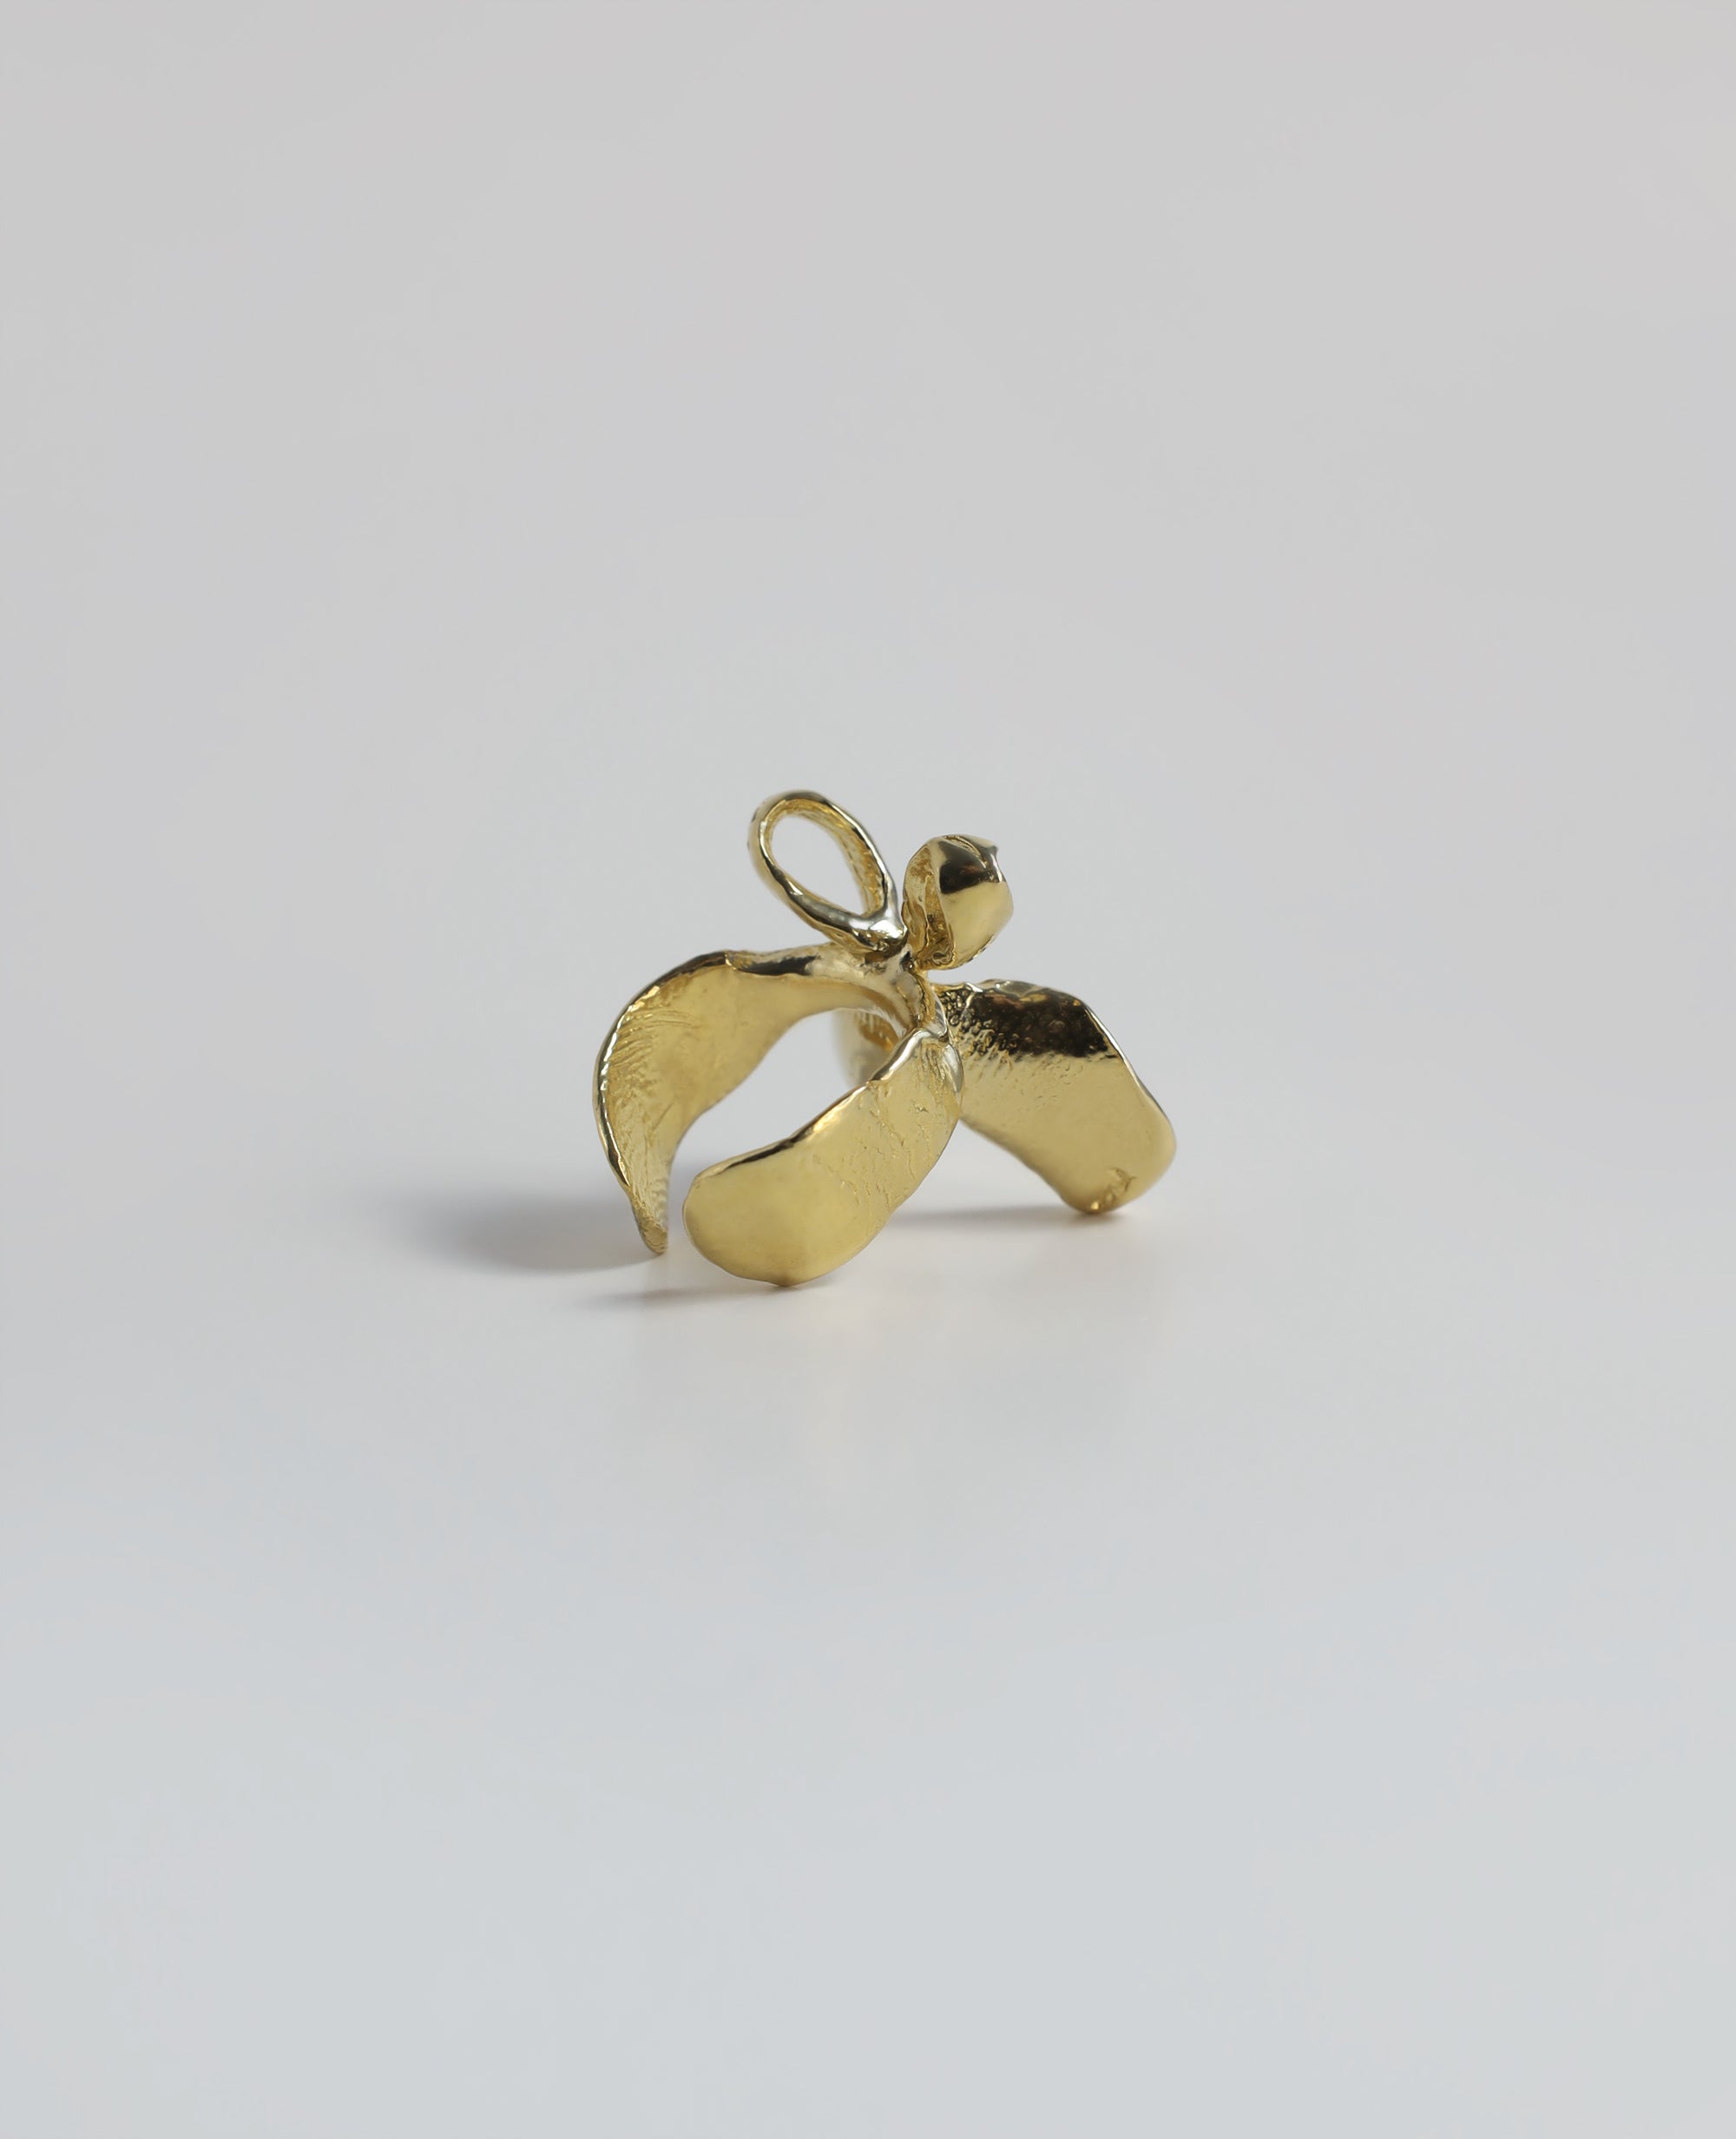 FINGER BOW // bague manchette dorée - ORA-C jewelry - bijoux faits à la main par Caroline Pham, designer indépendante basée à Montréal